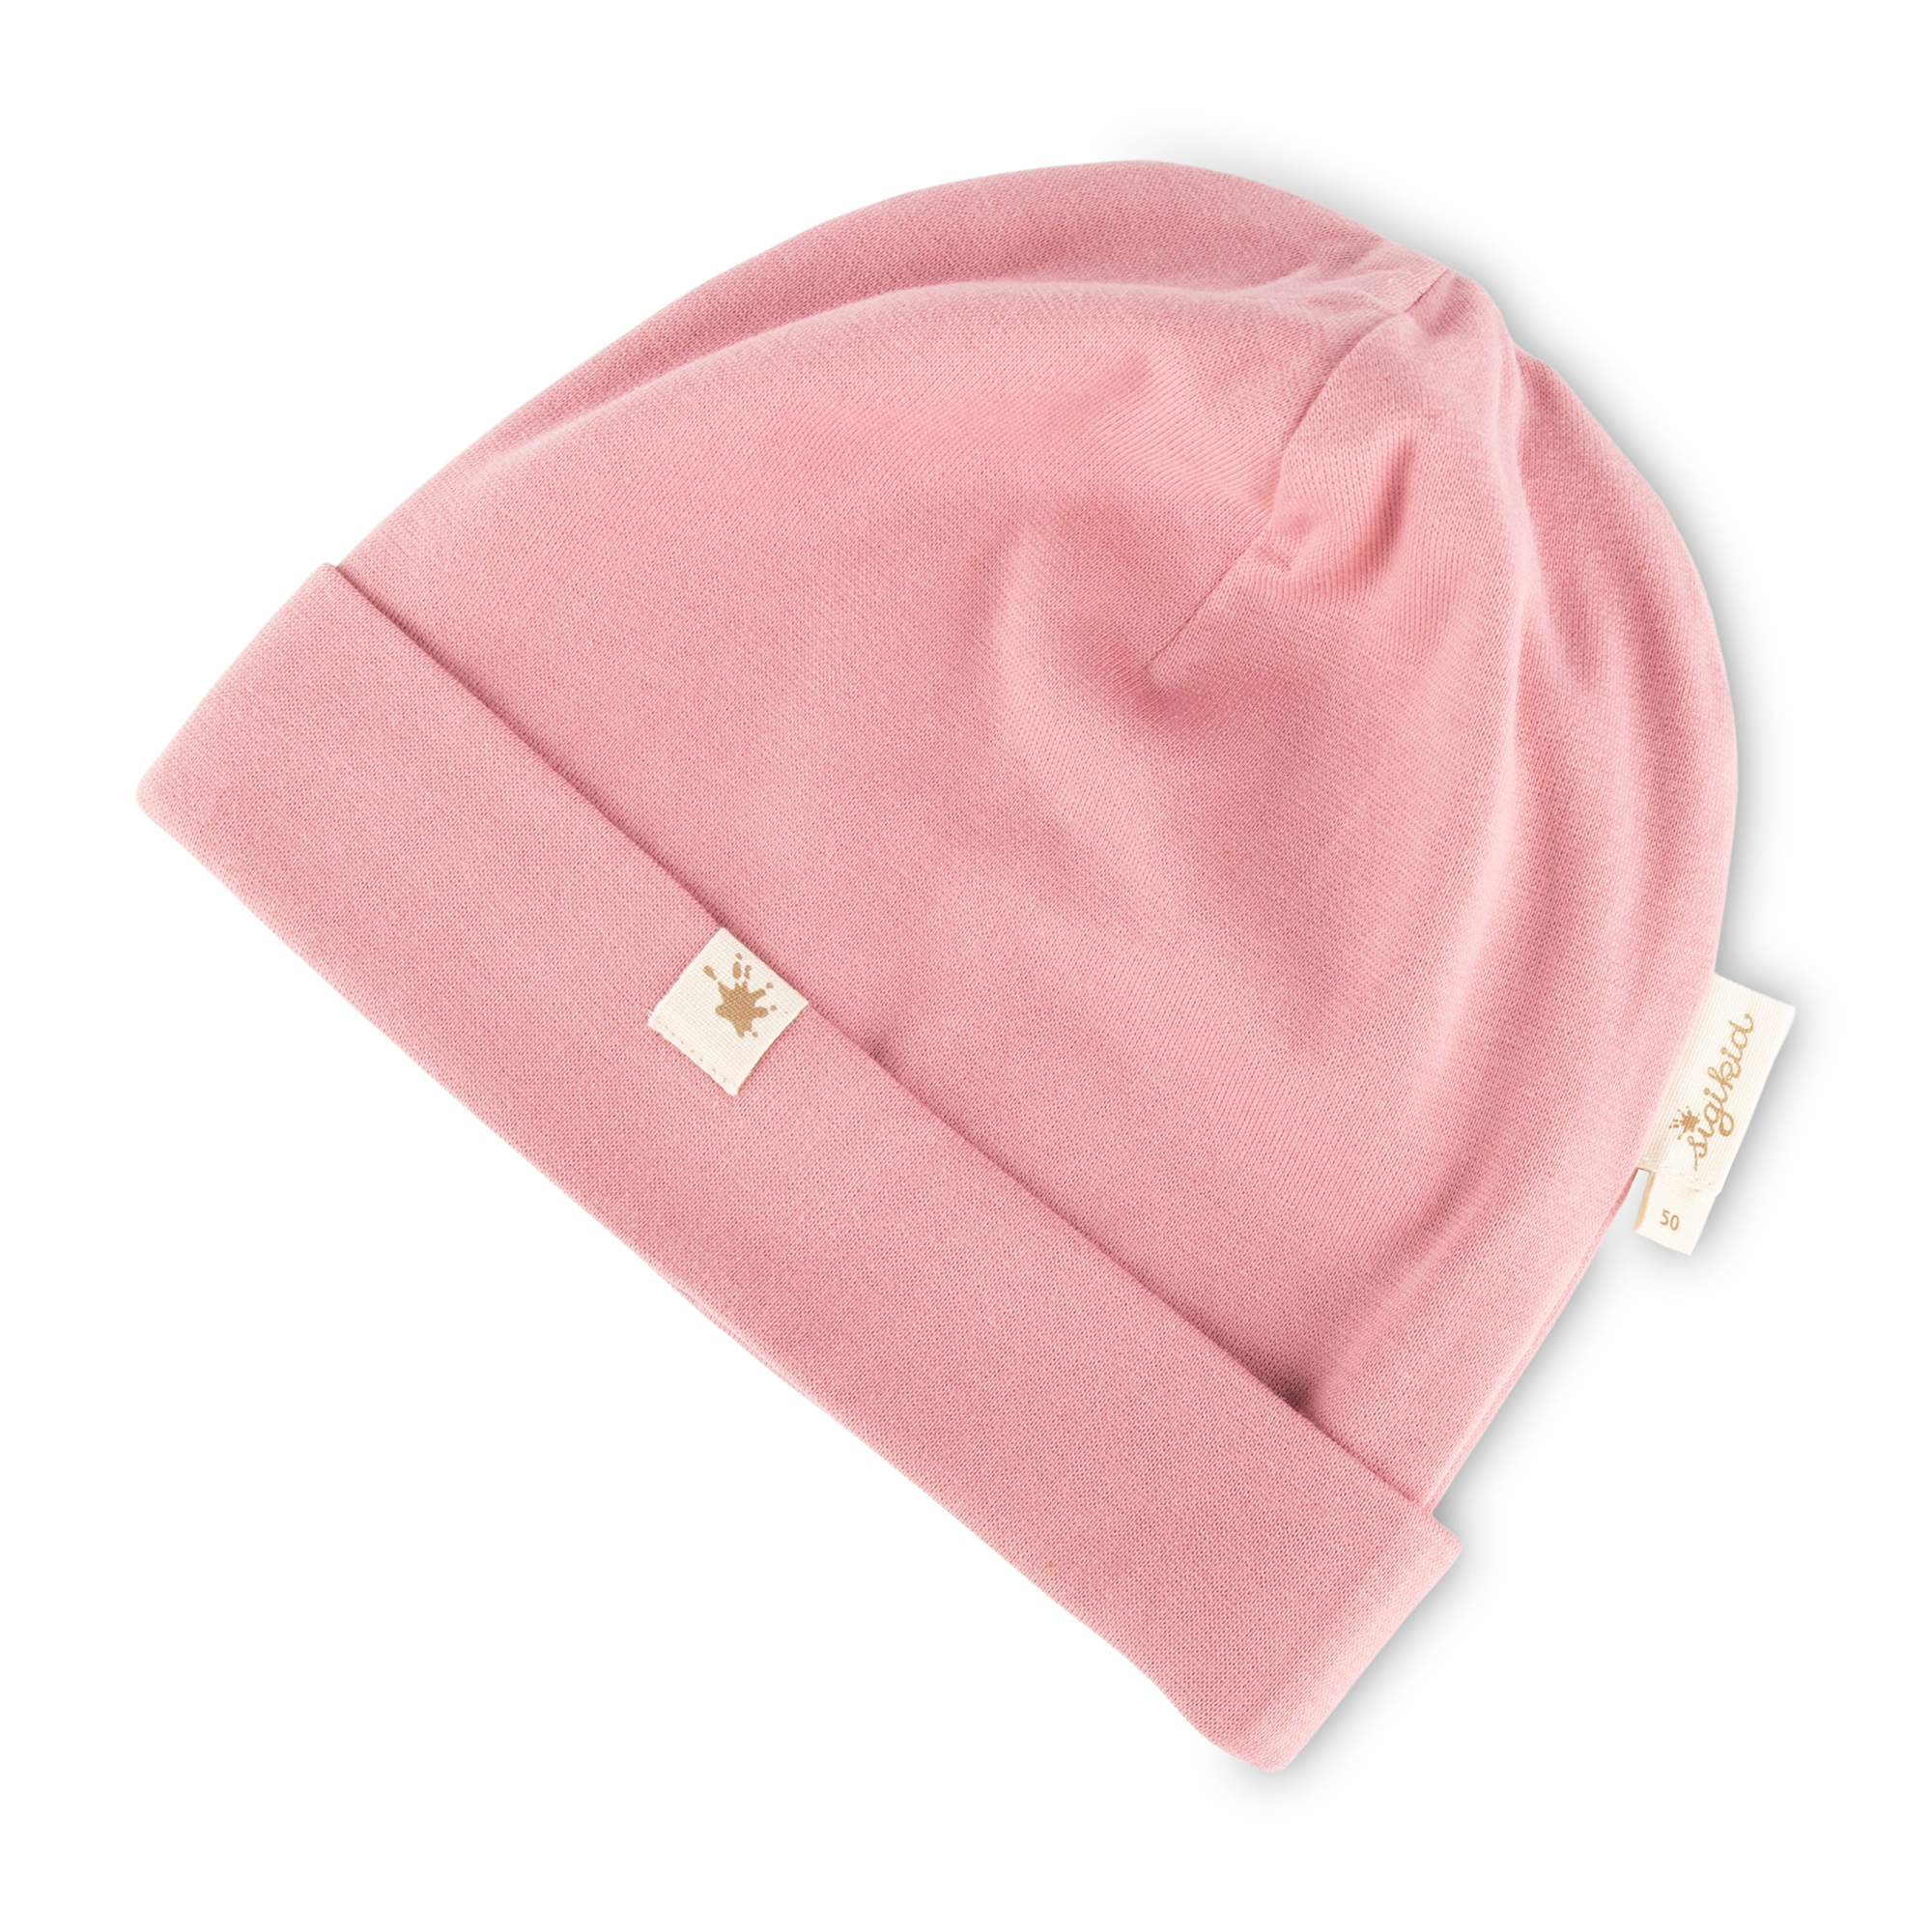 Children's rib knit beanie hat, pink